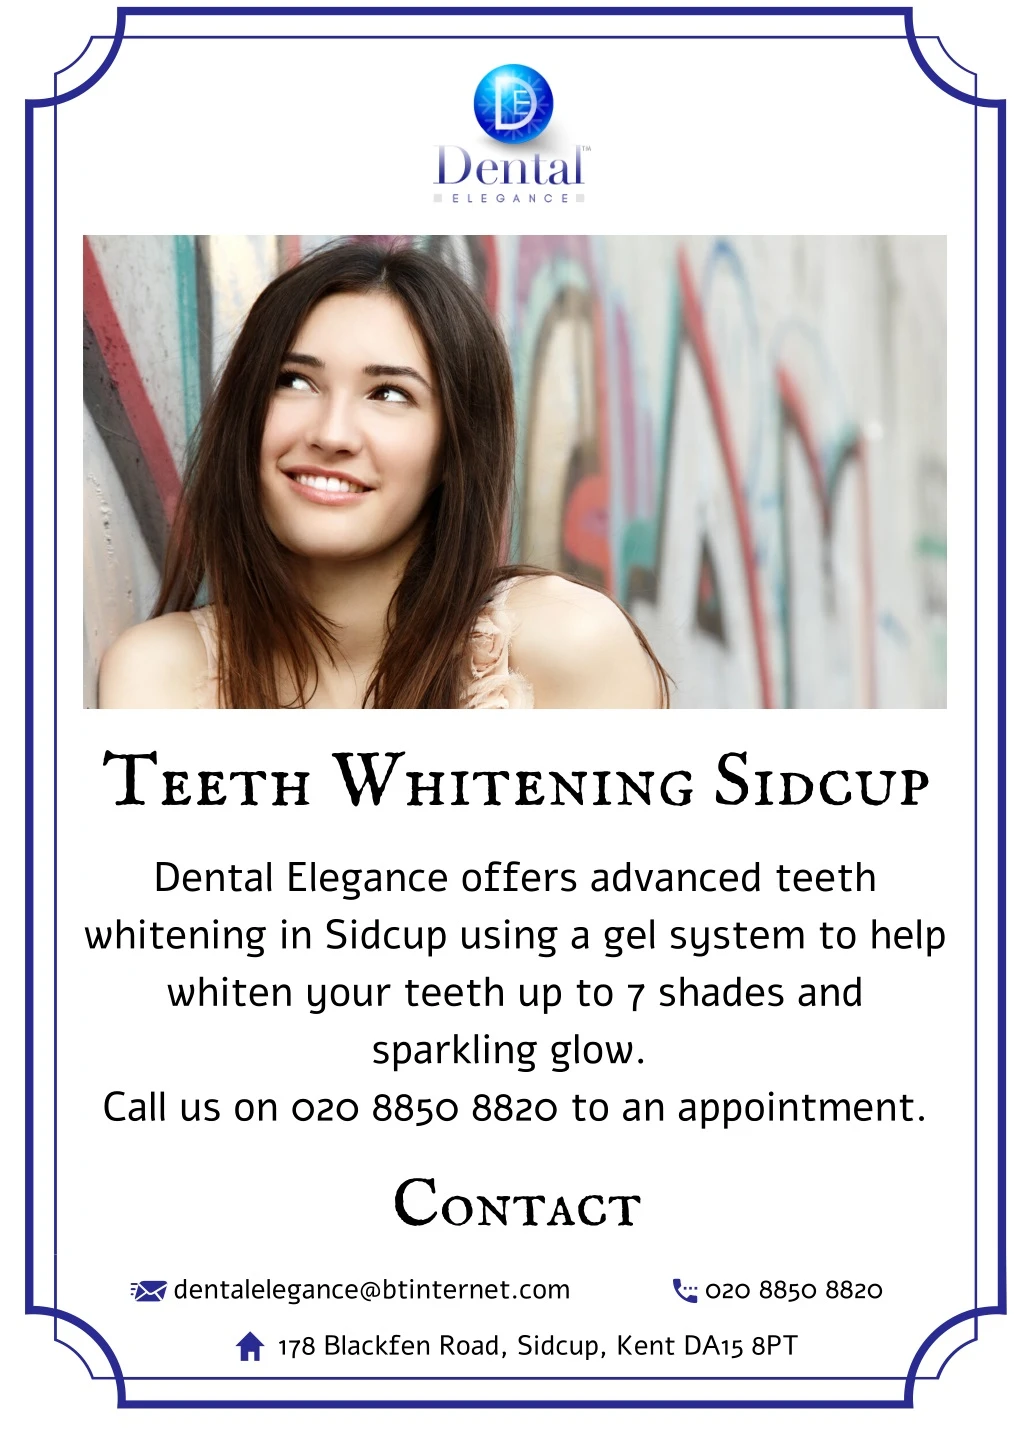 teeth whitening sidcup dental elegance offers